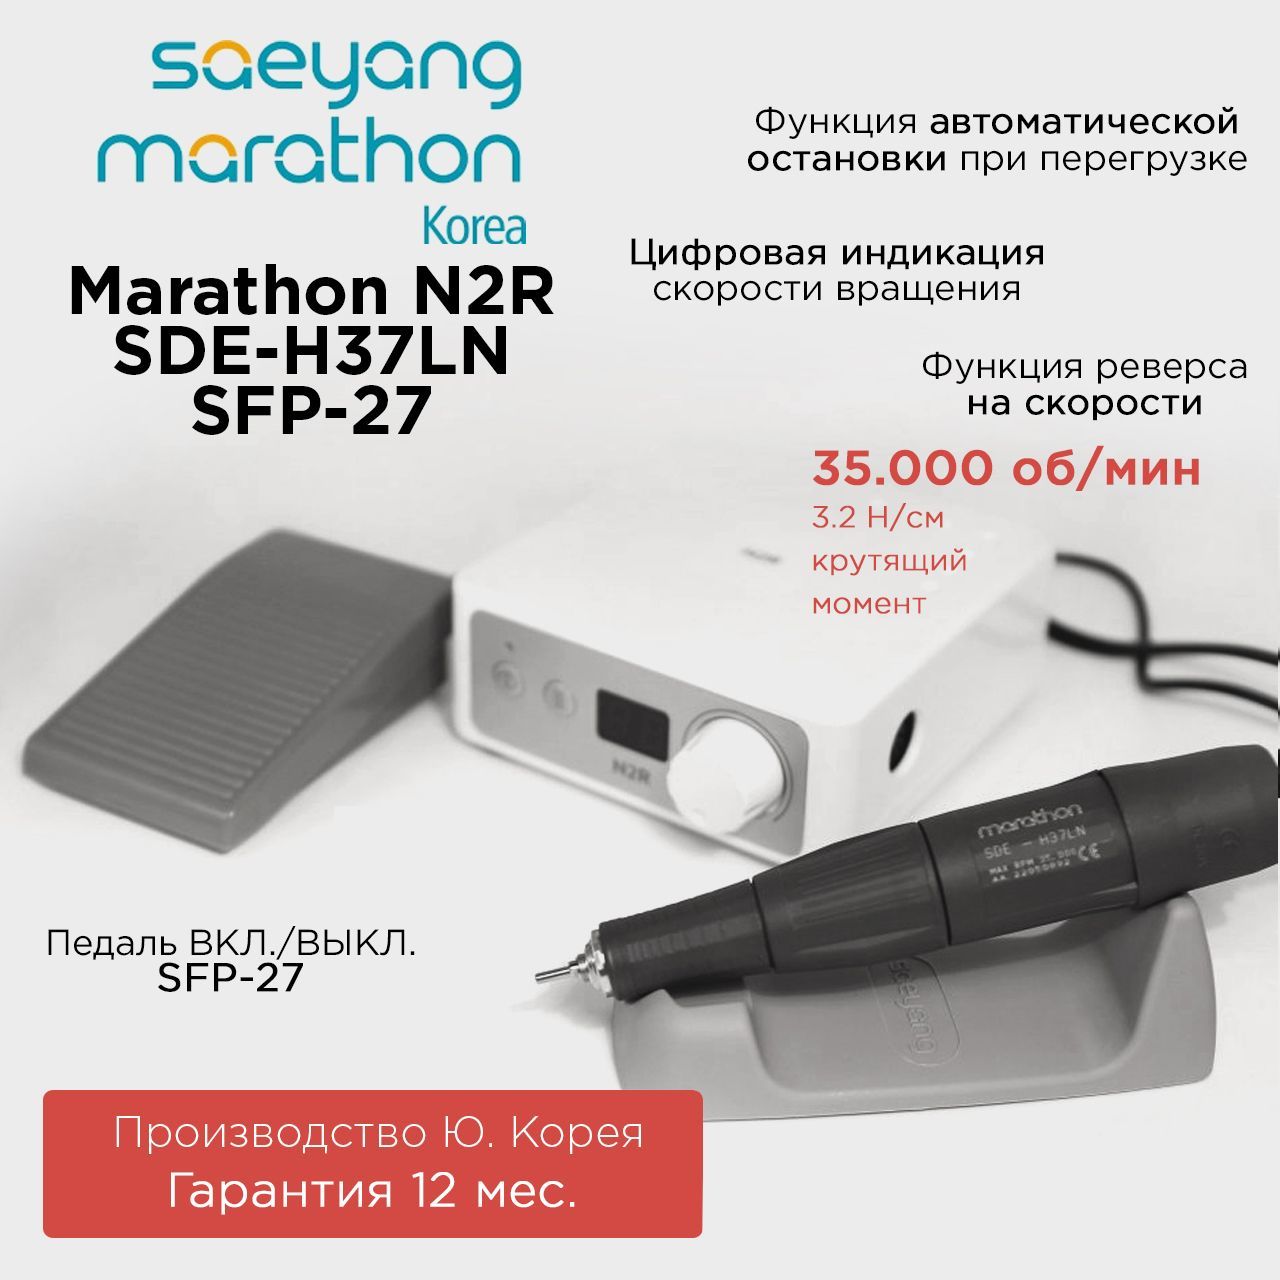 Аппарат для маникюра Marathon N2R SDE-H37LN с педалью SFP-27 летательные аппараты от аэростатов до дронов